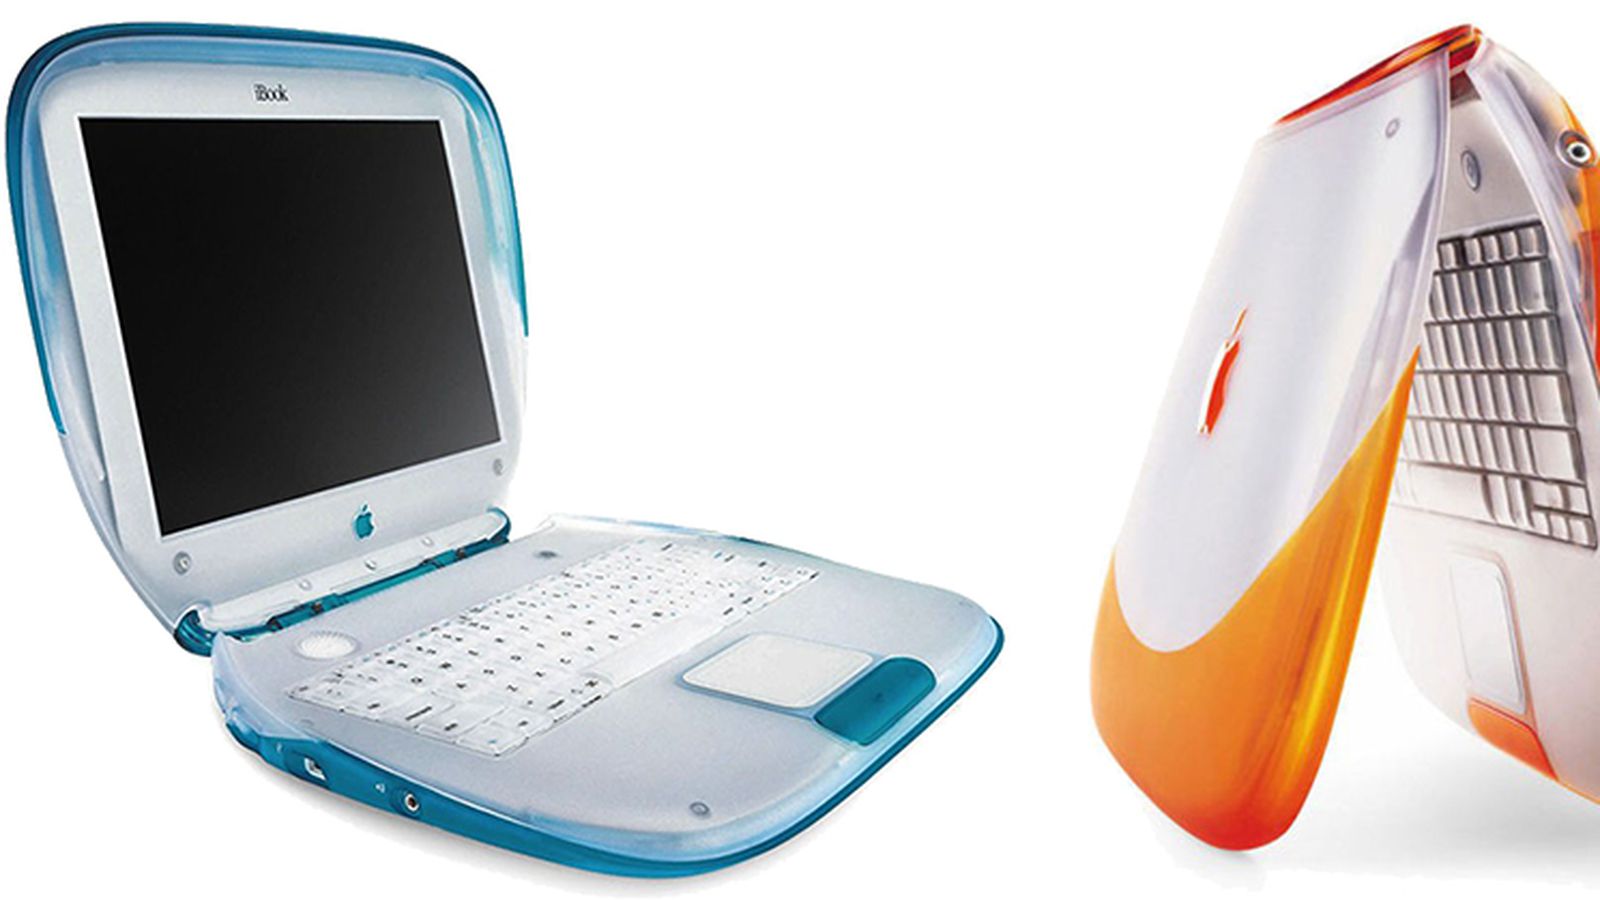 1999年7月21日史蒂夫·乔布斯于纽约发布了以消费者为导向的 iBook笔记本电脑